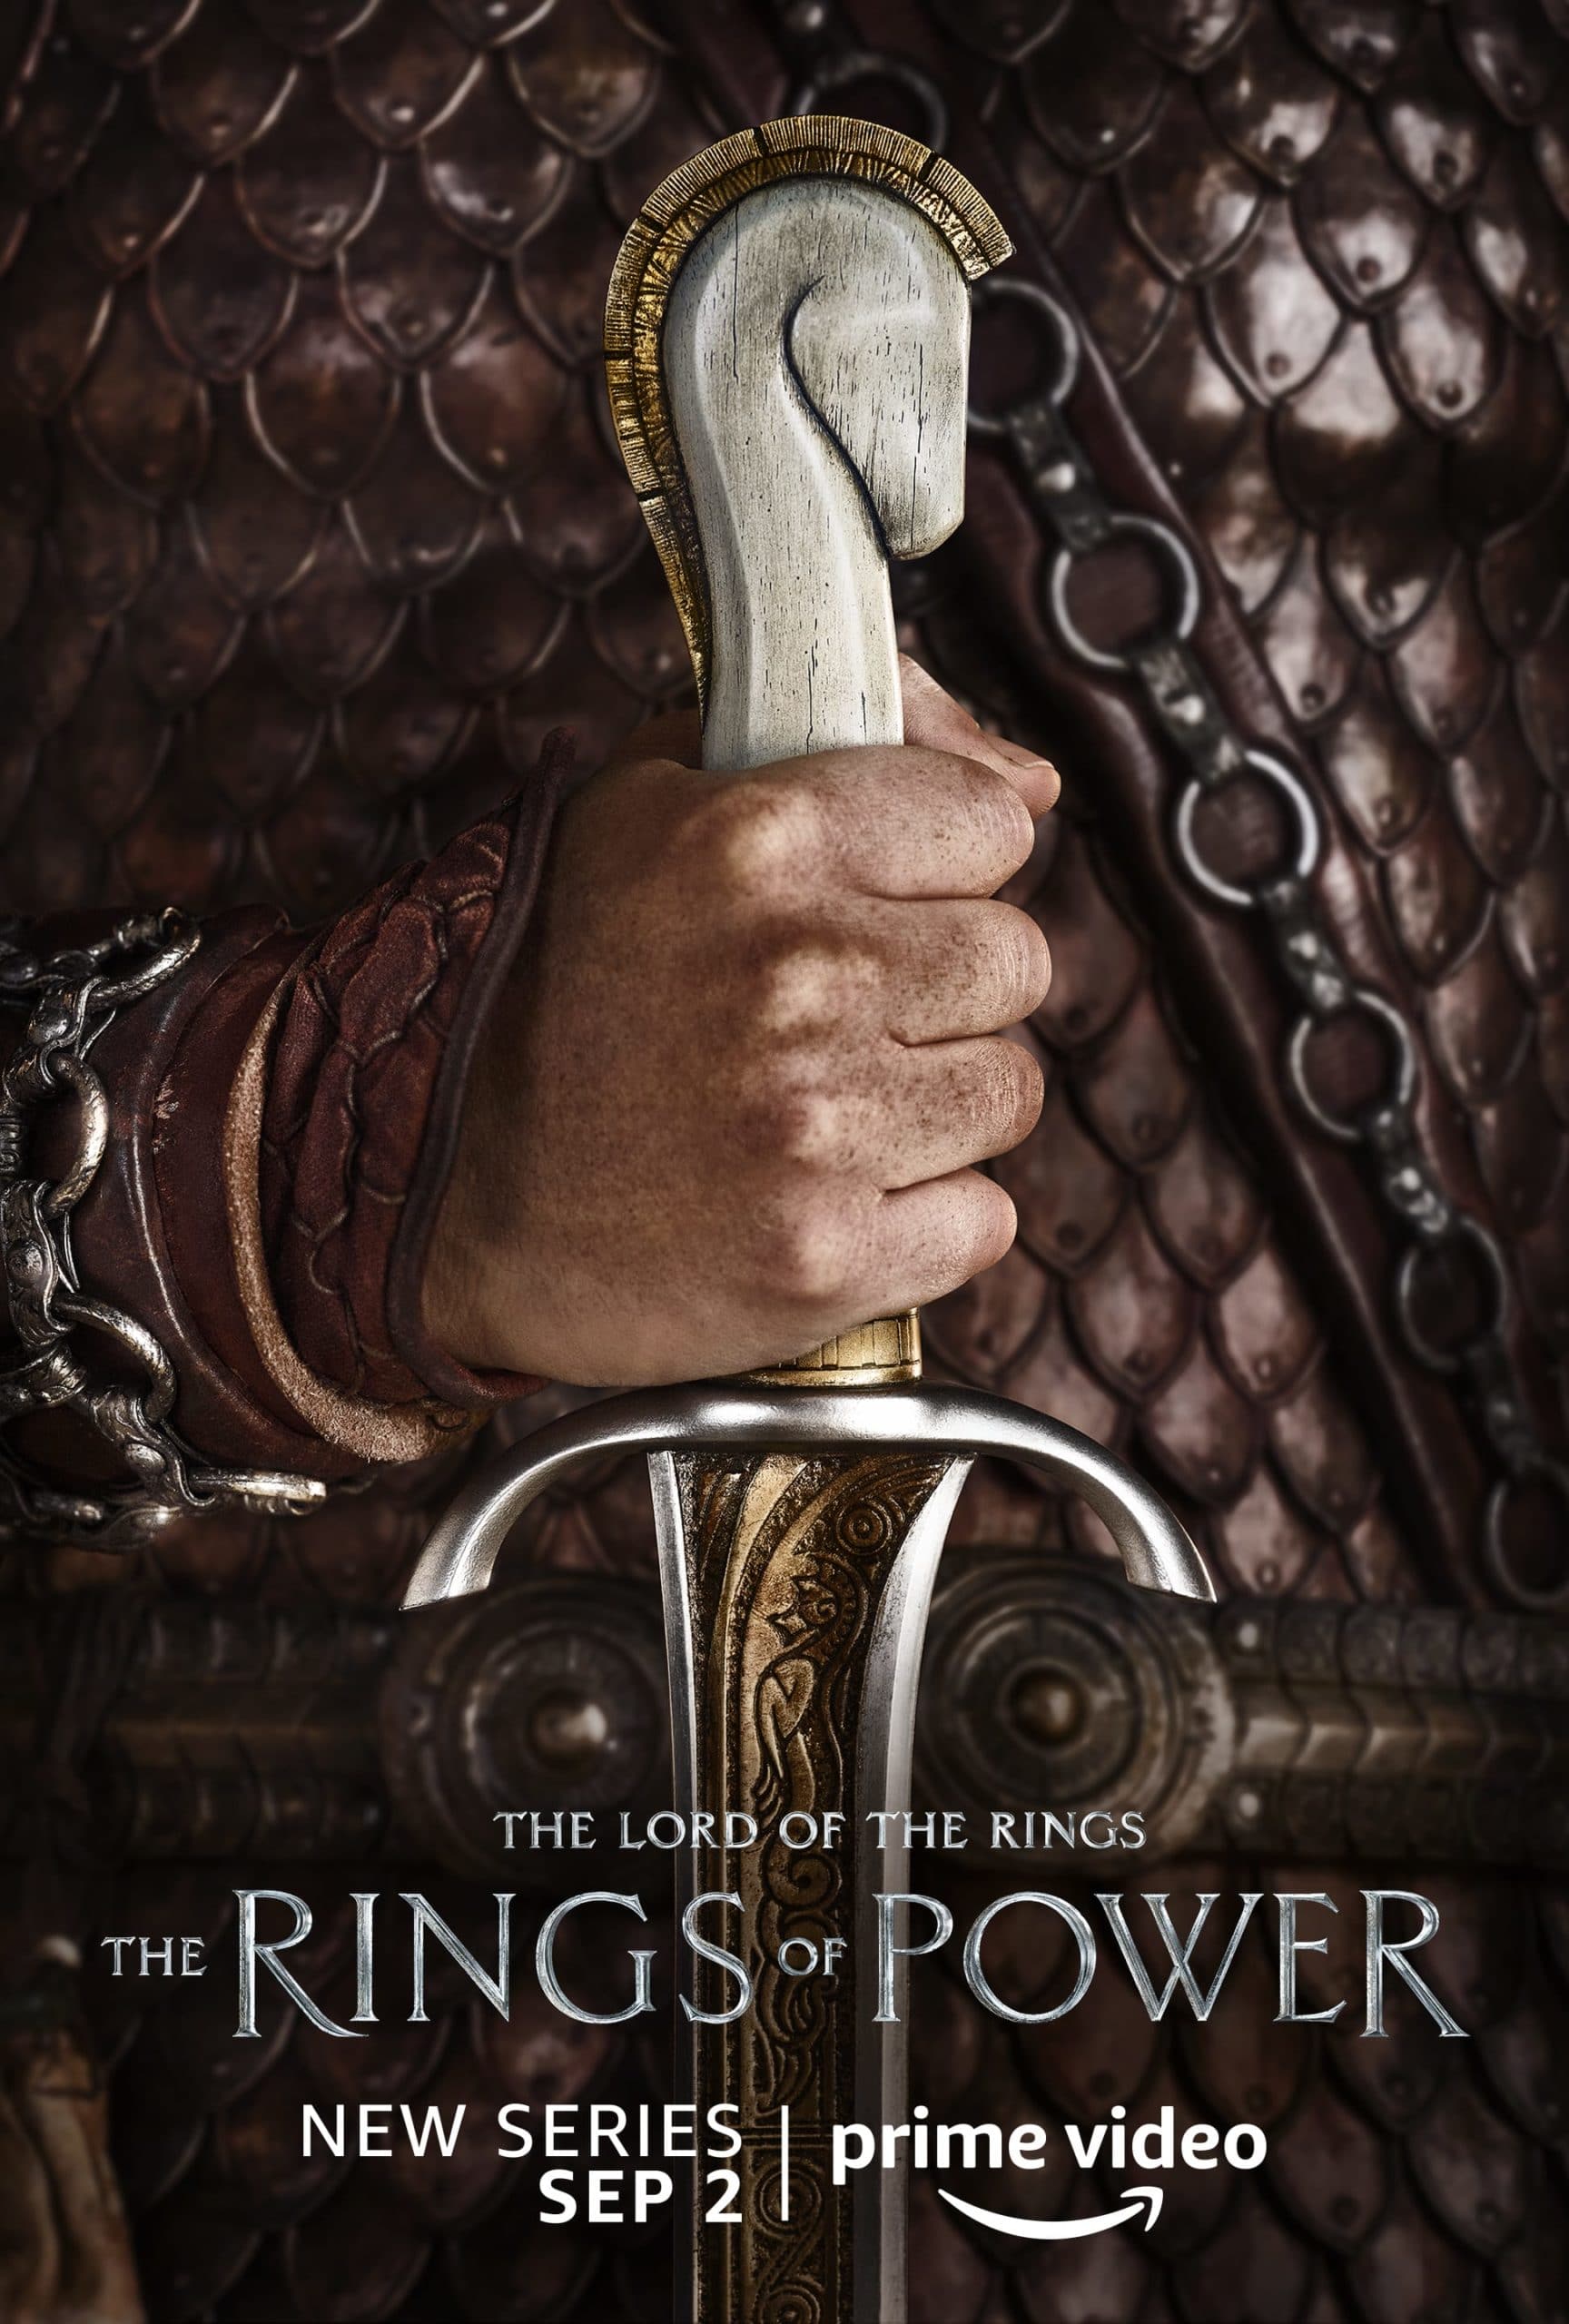 Poster-Rätsel der Herr der Ringe-Serie gelöst: Bilder zu Die Ringe der  Macht enthüllen komplett neue Figur - Serien News 